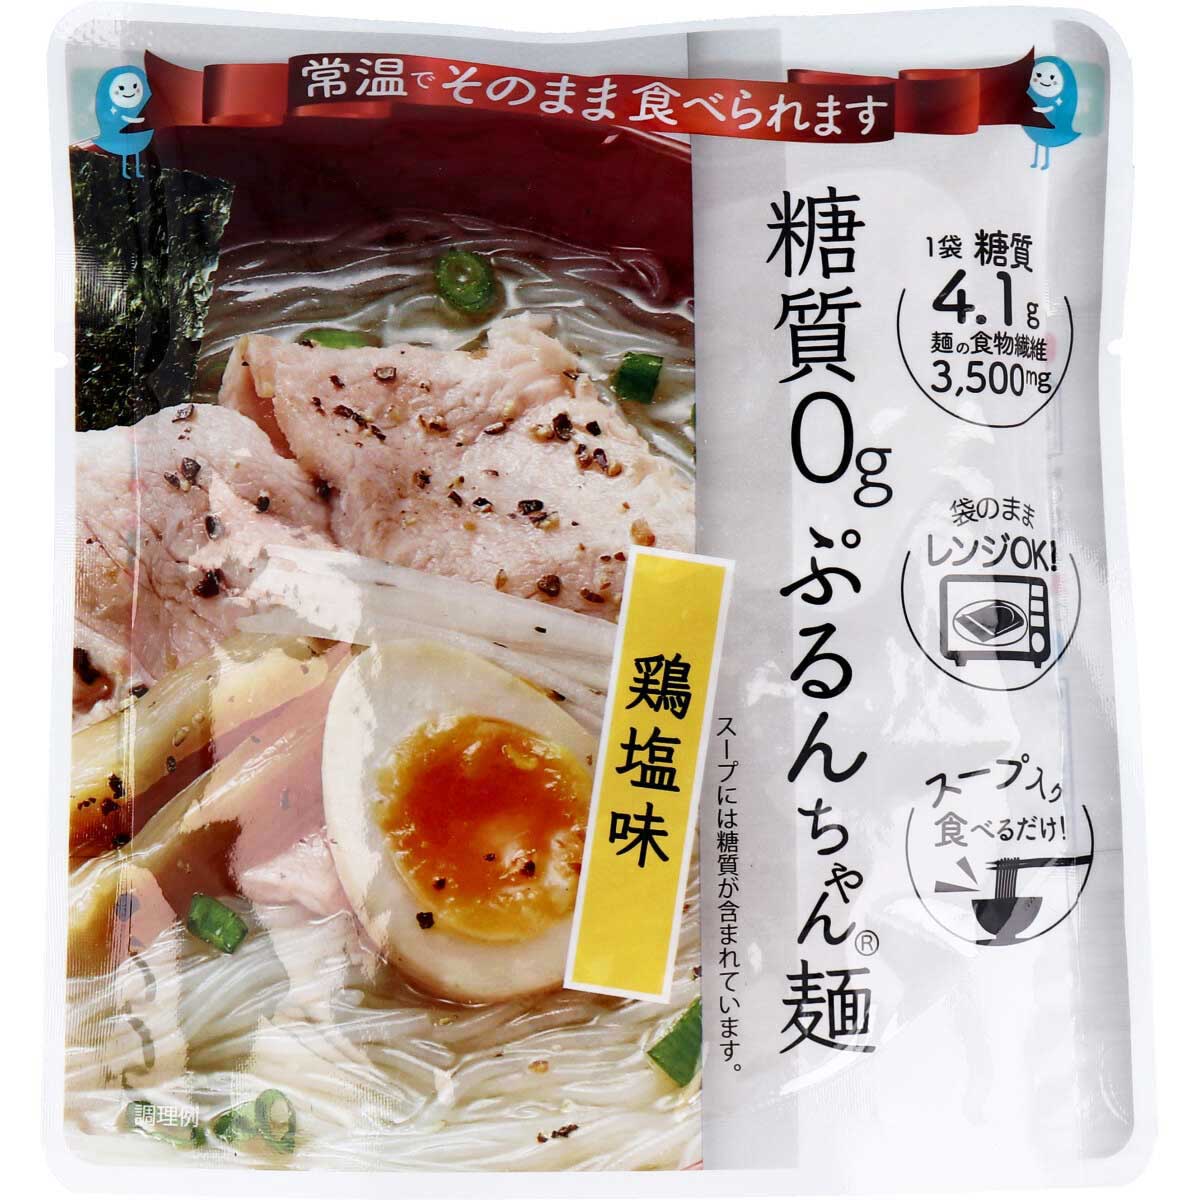 ※[販売終了] 糖質0g ぷるんちゃん麺 鶏塩味 1食分 200g